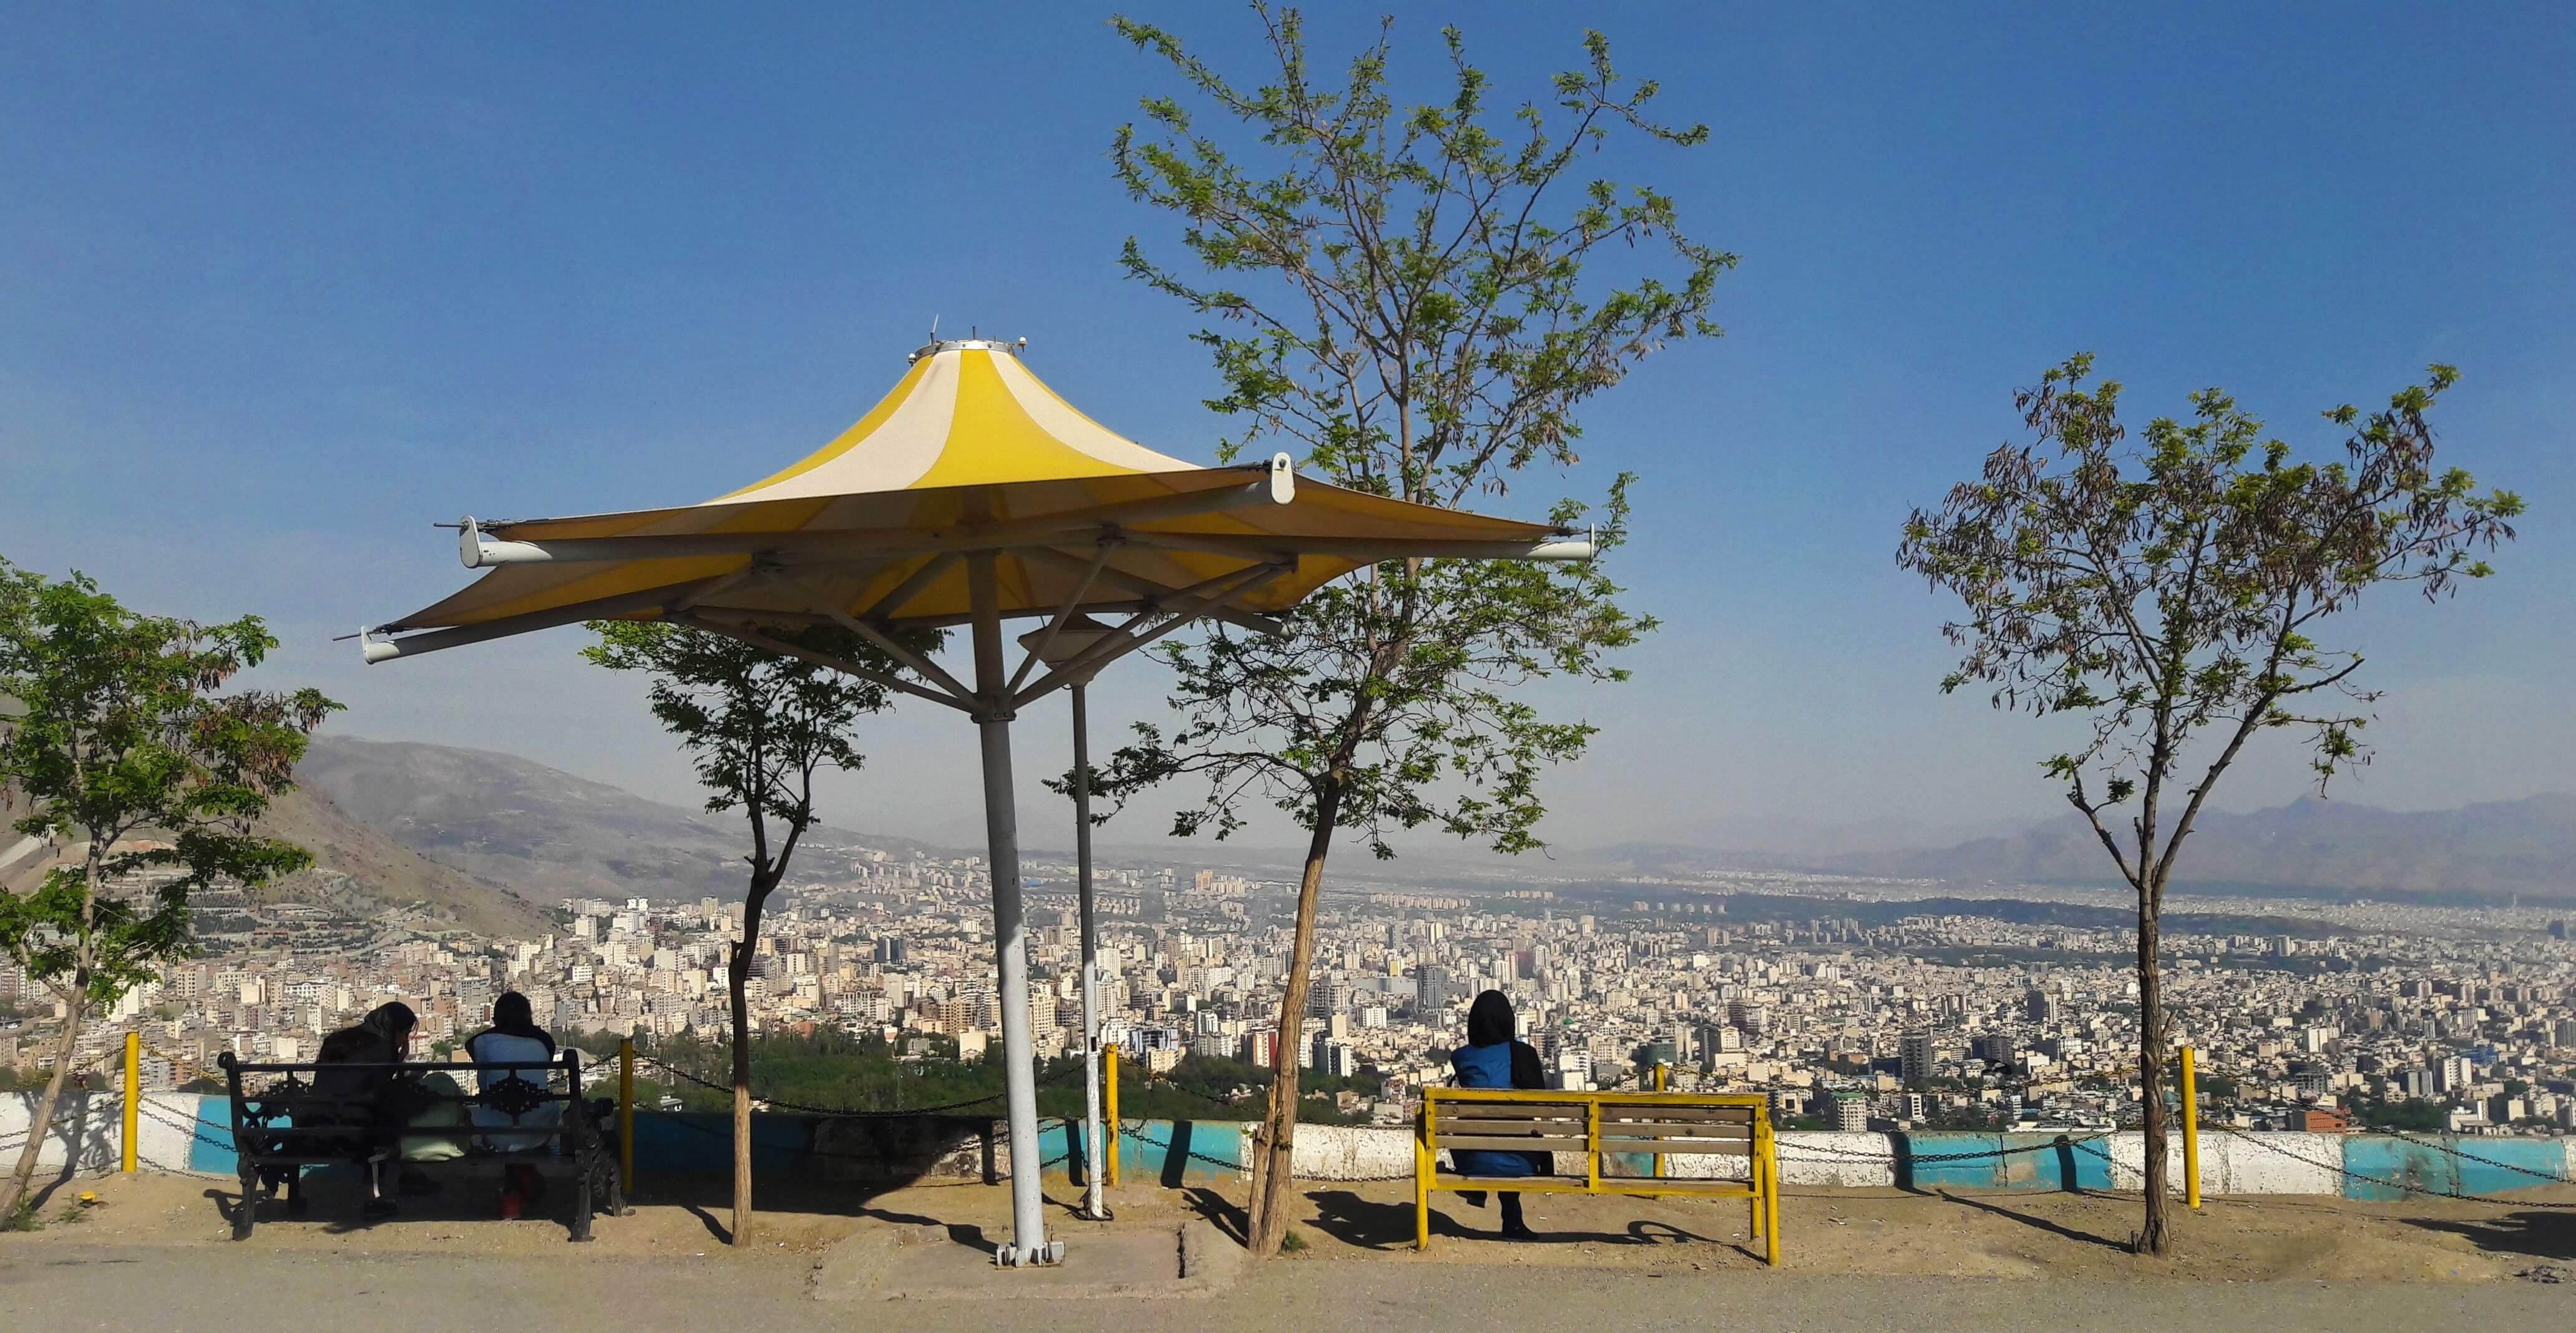 Bam-e Tehran